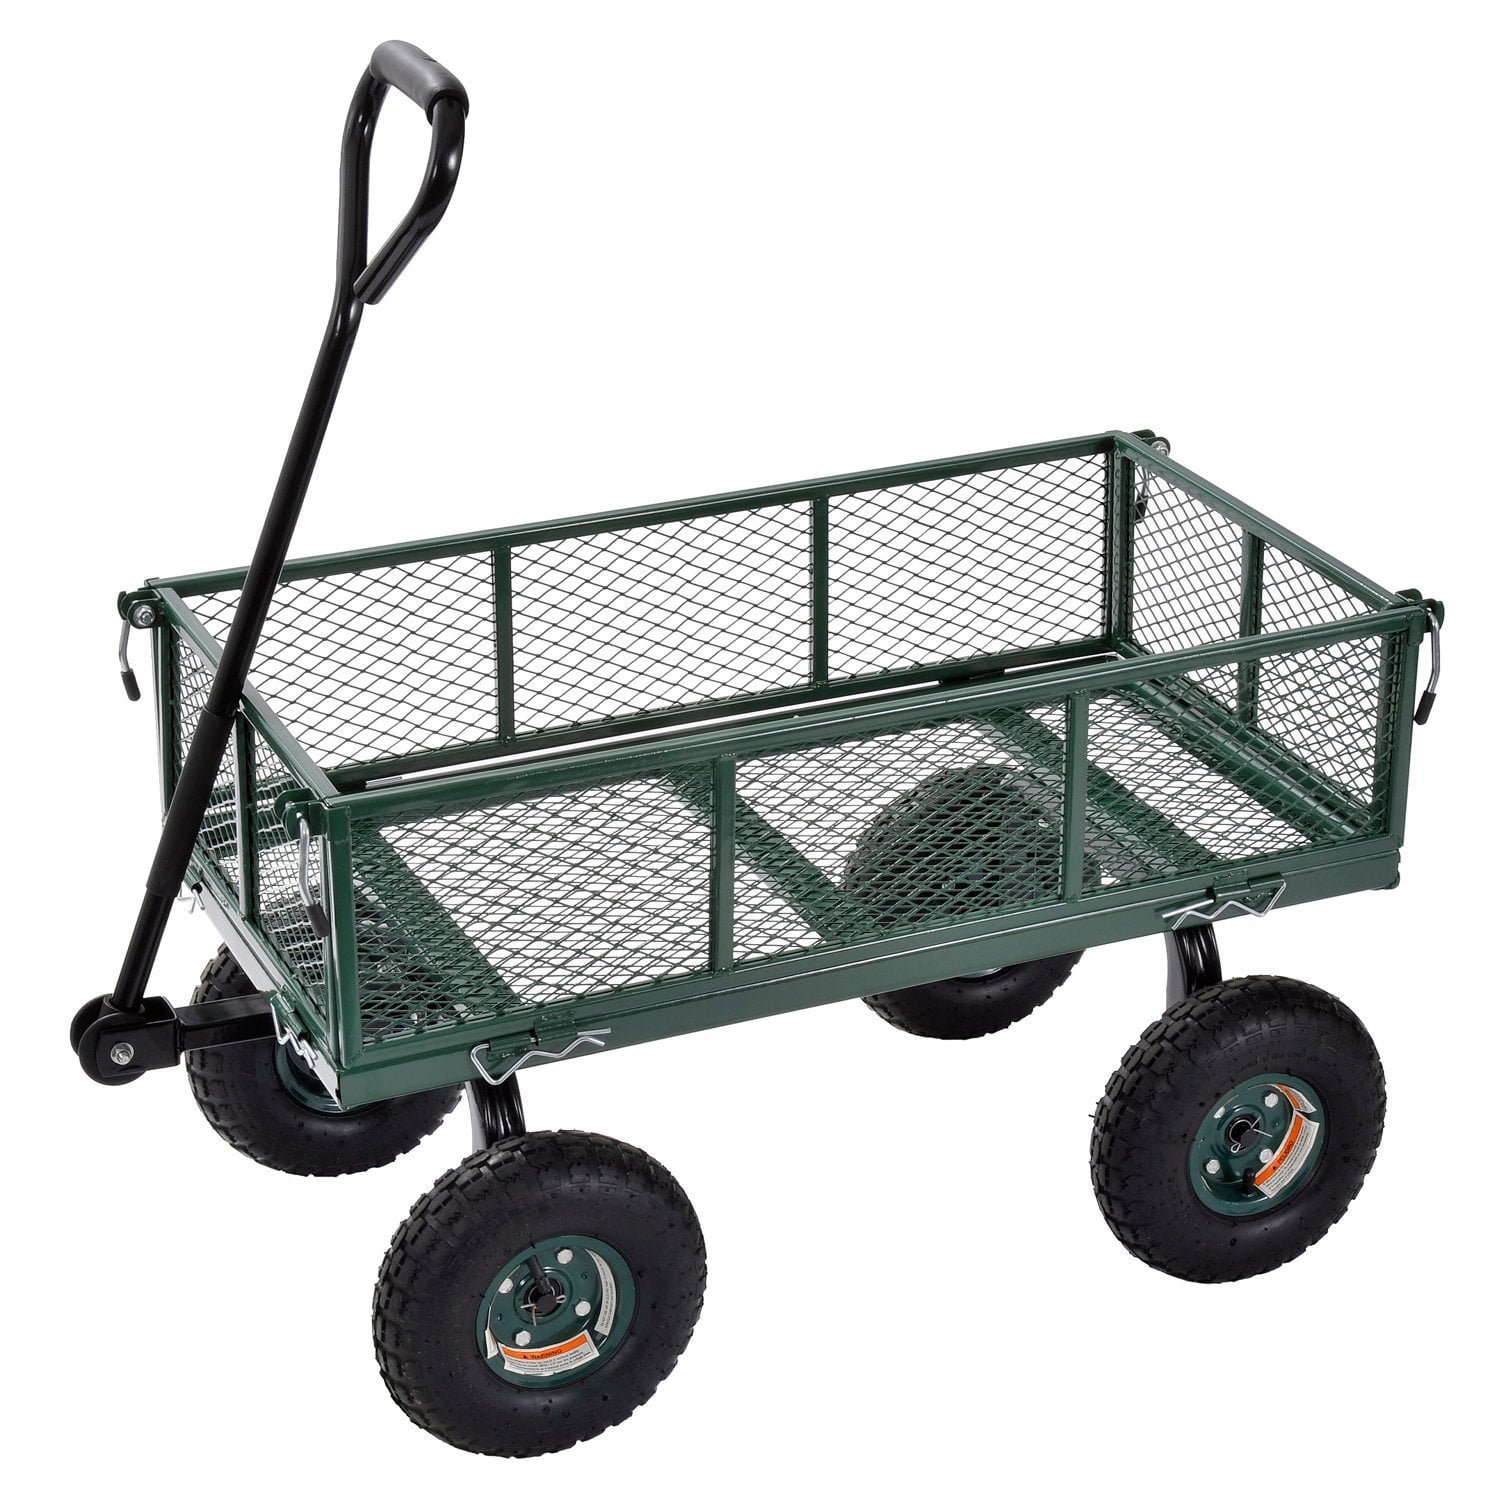 Load 400 lb Sandusky Lee CW3418 Muscle Carts Steel Utility Garden Wagon 